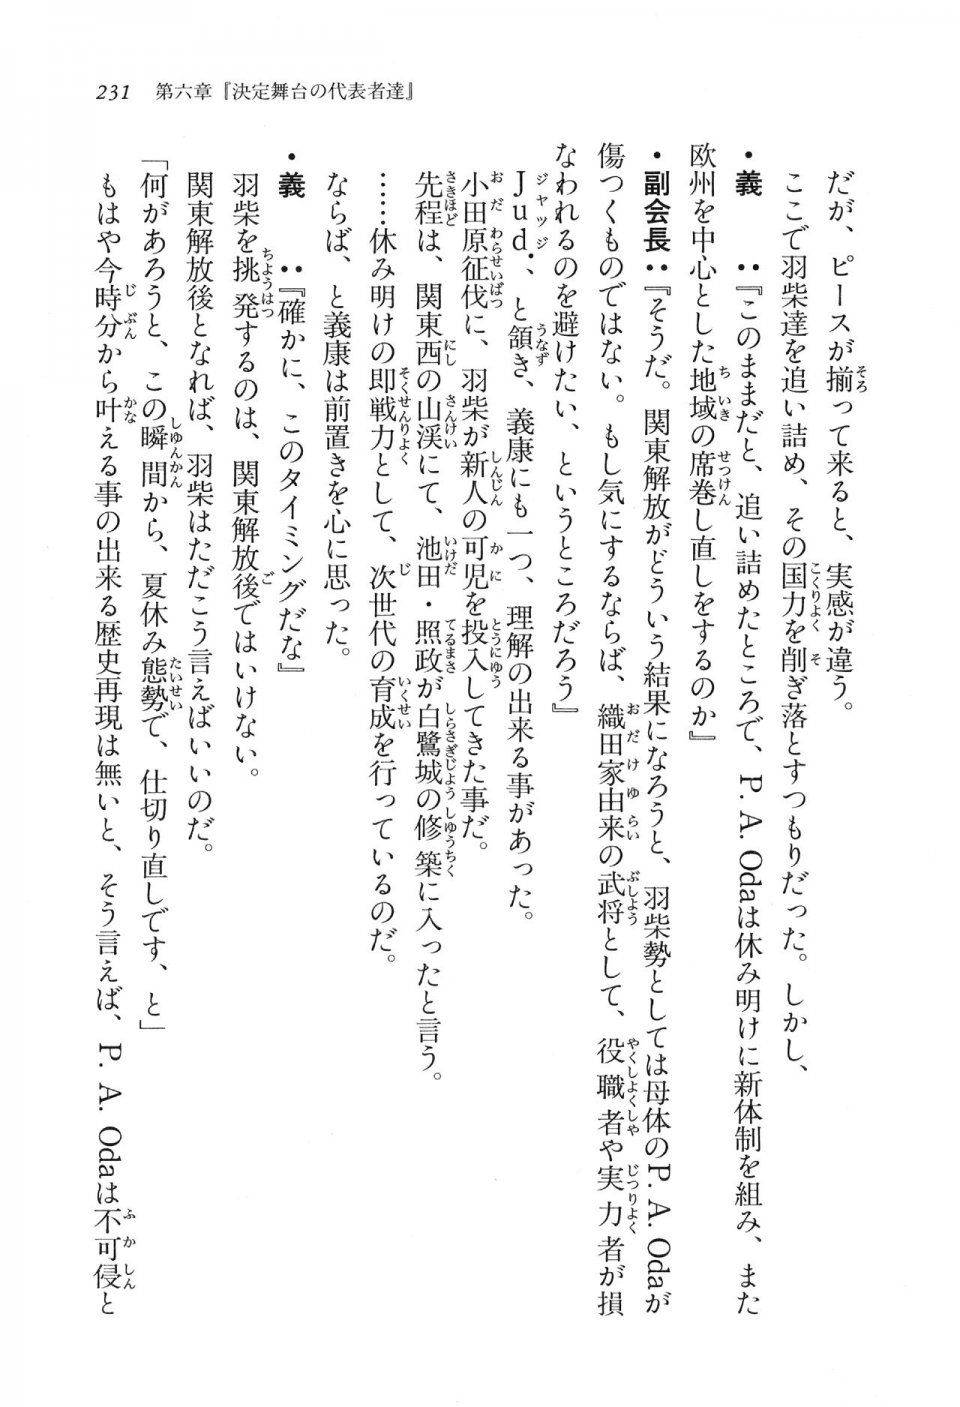 Kyoukai Senjou no Horizon LN Vol 16(7A) - Photo #231